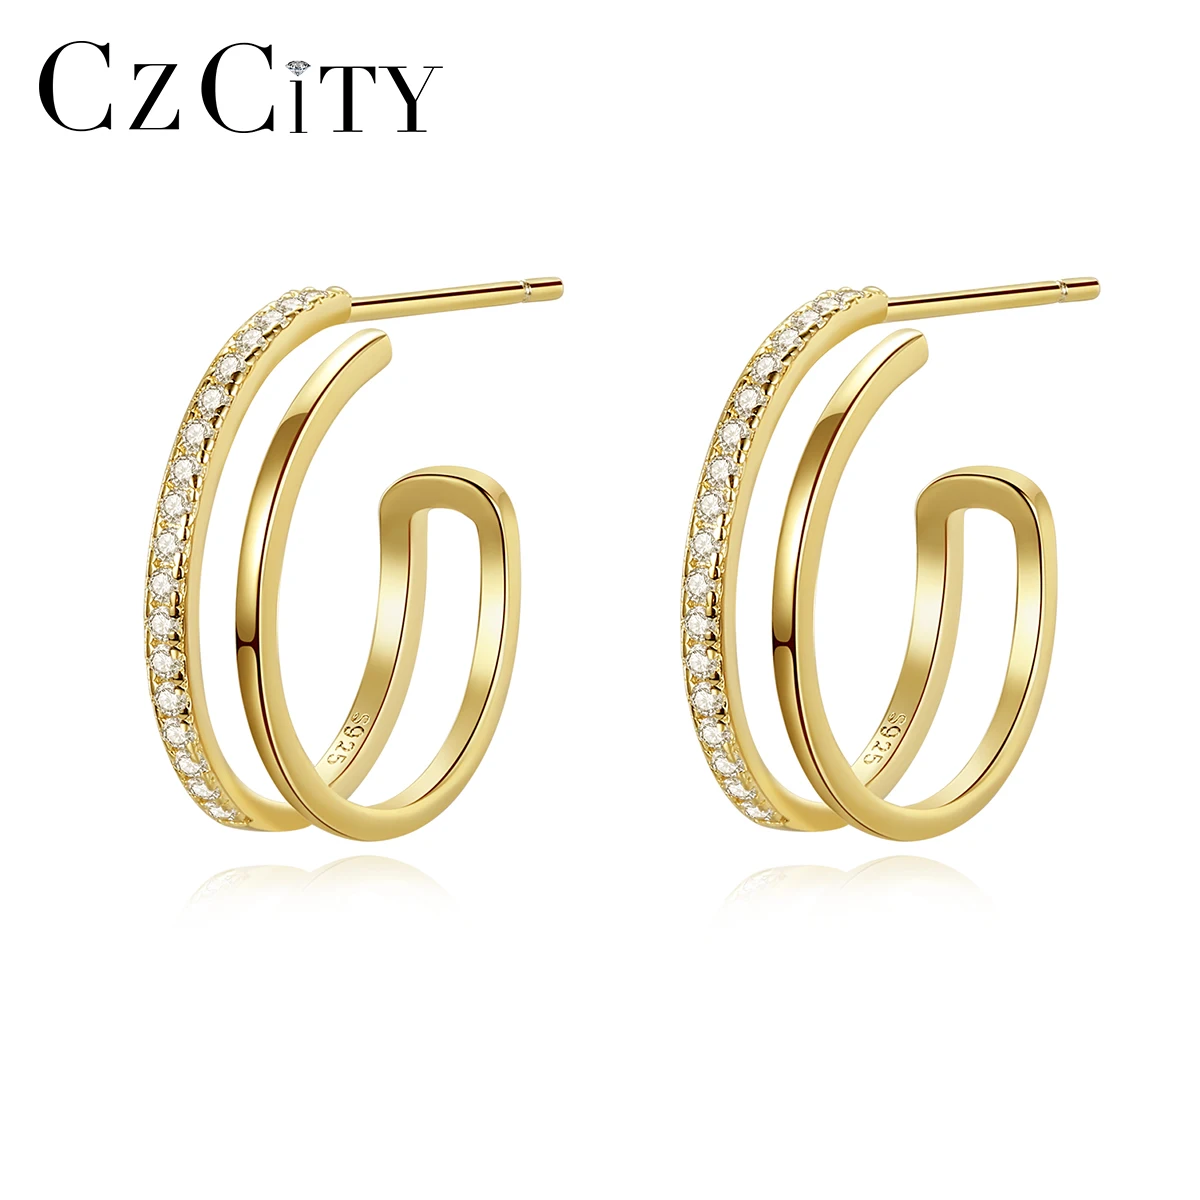 

CZCITY New 925 Sterling Silver Golden Hoop Earrings for Women Fine Jewelry Wedding Engagement Ear Hook Bijoux Femme Brincos Gift